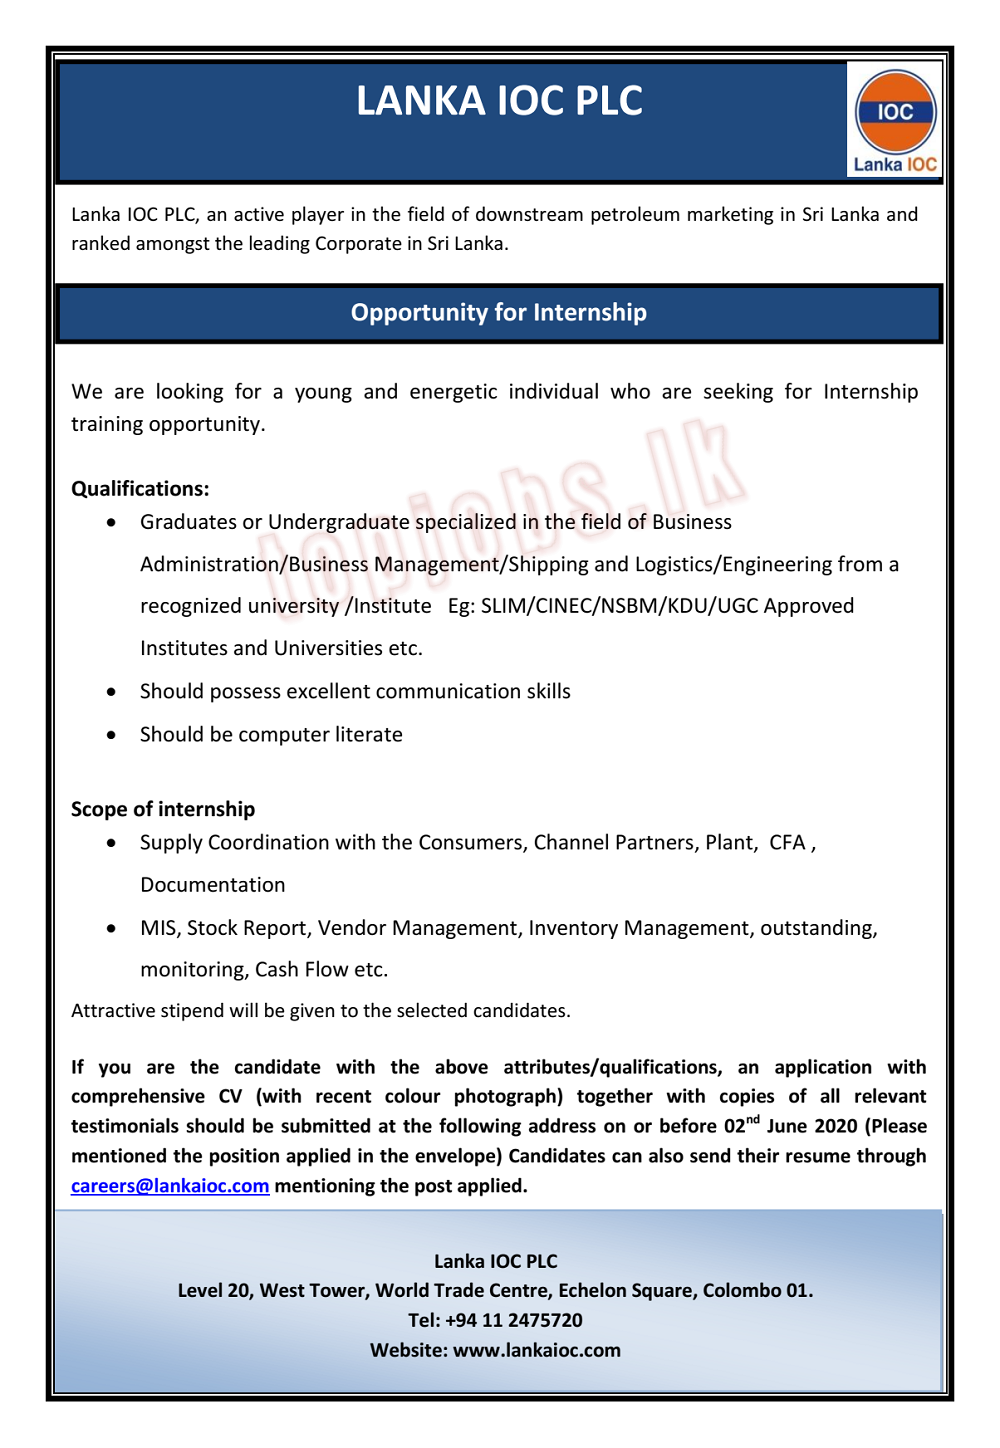 Internship Jobs Vacancies Opportunities - Lanka IOC Jobs Vacancies